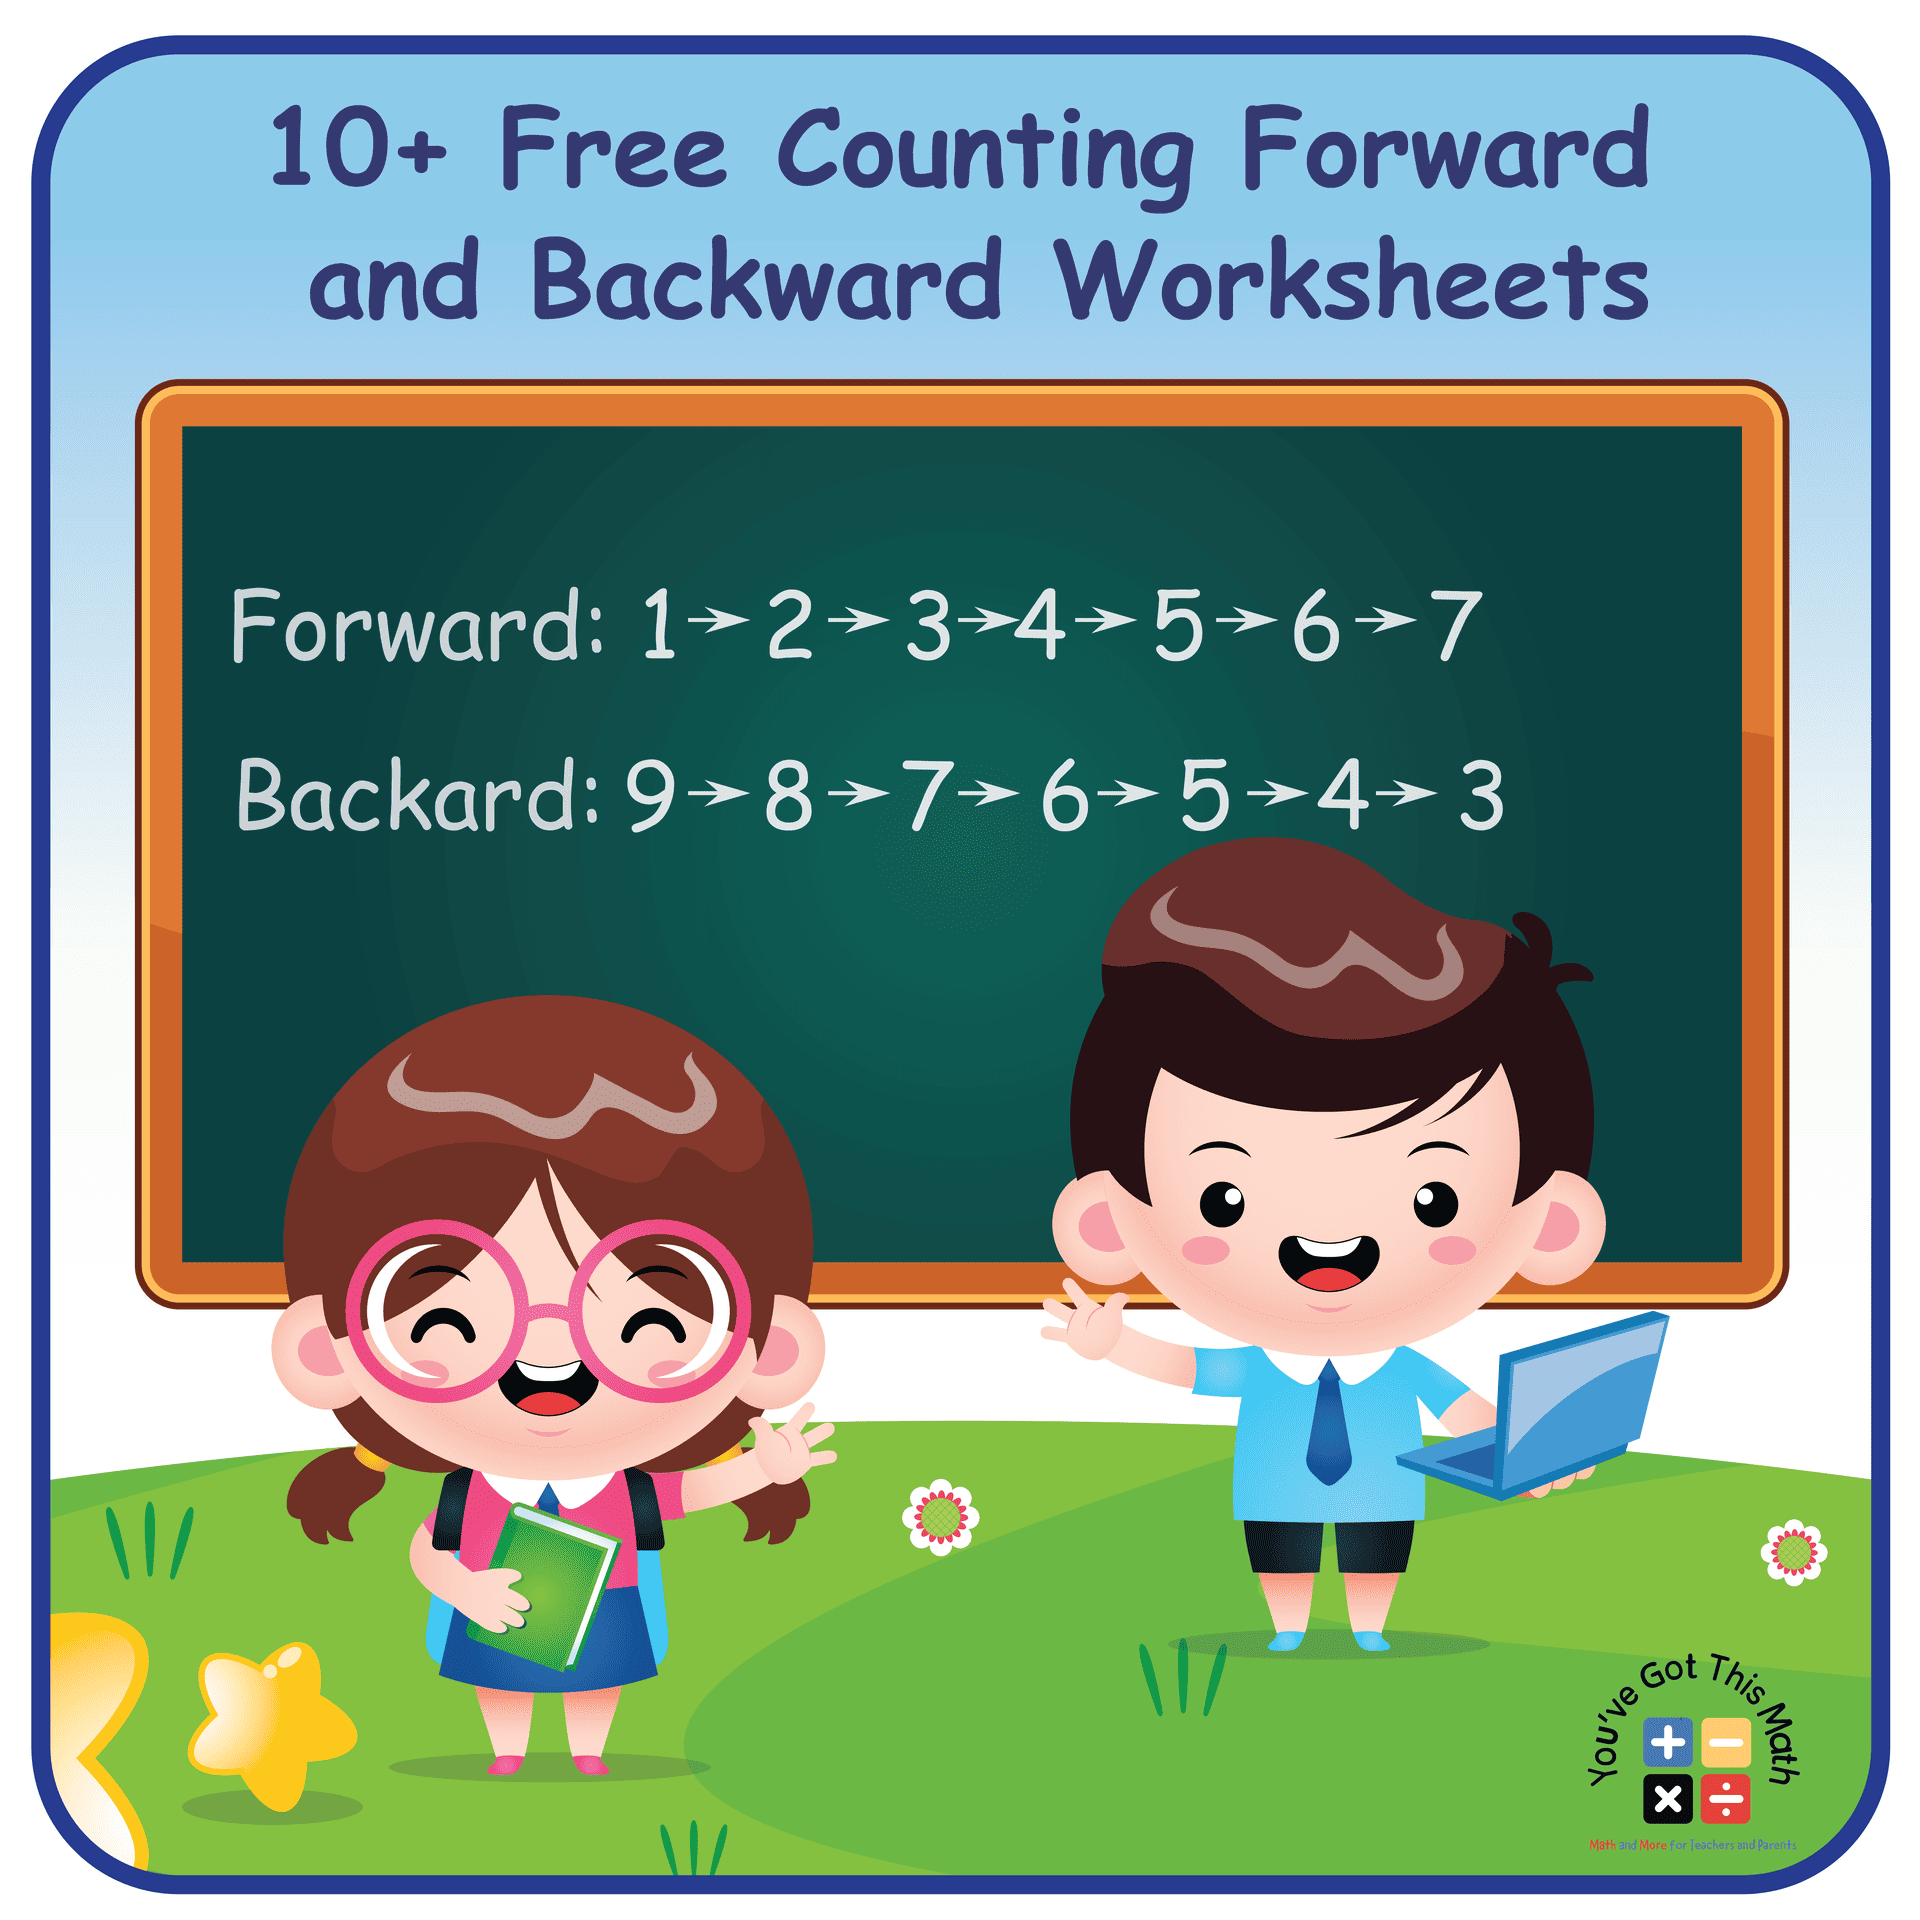 10+ Free Counting Forward and Backward Worksheets